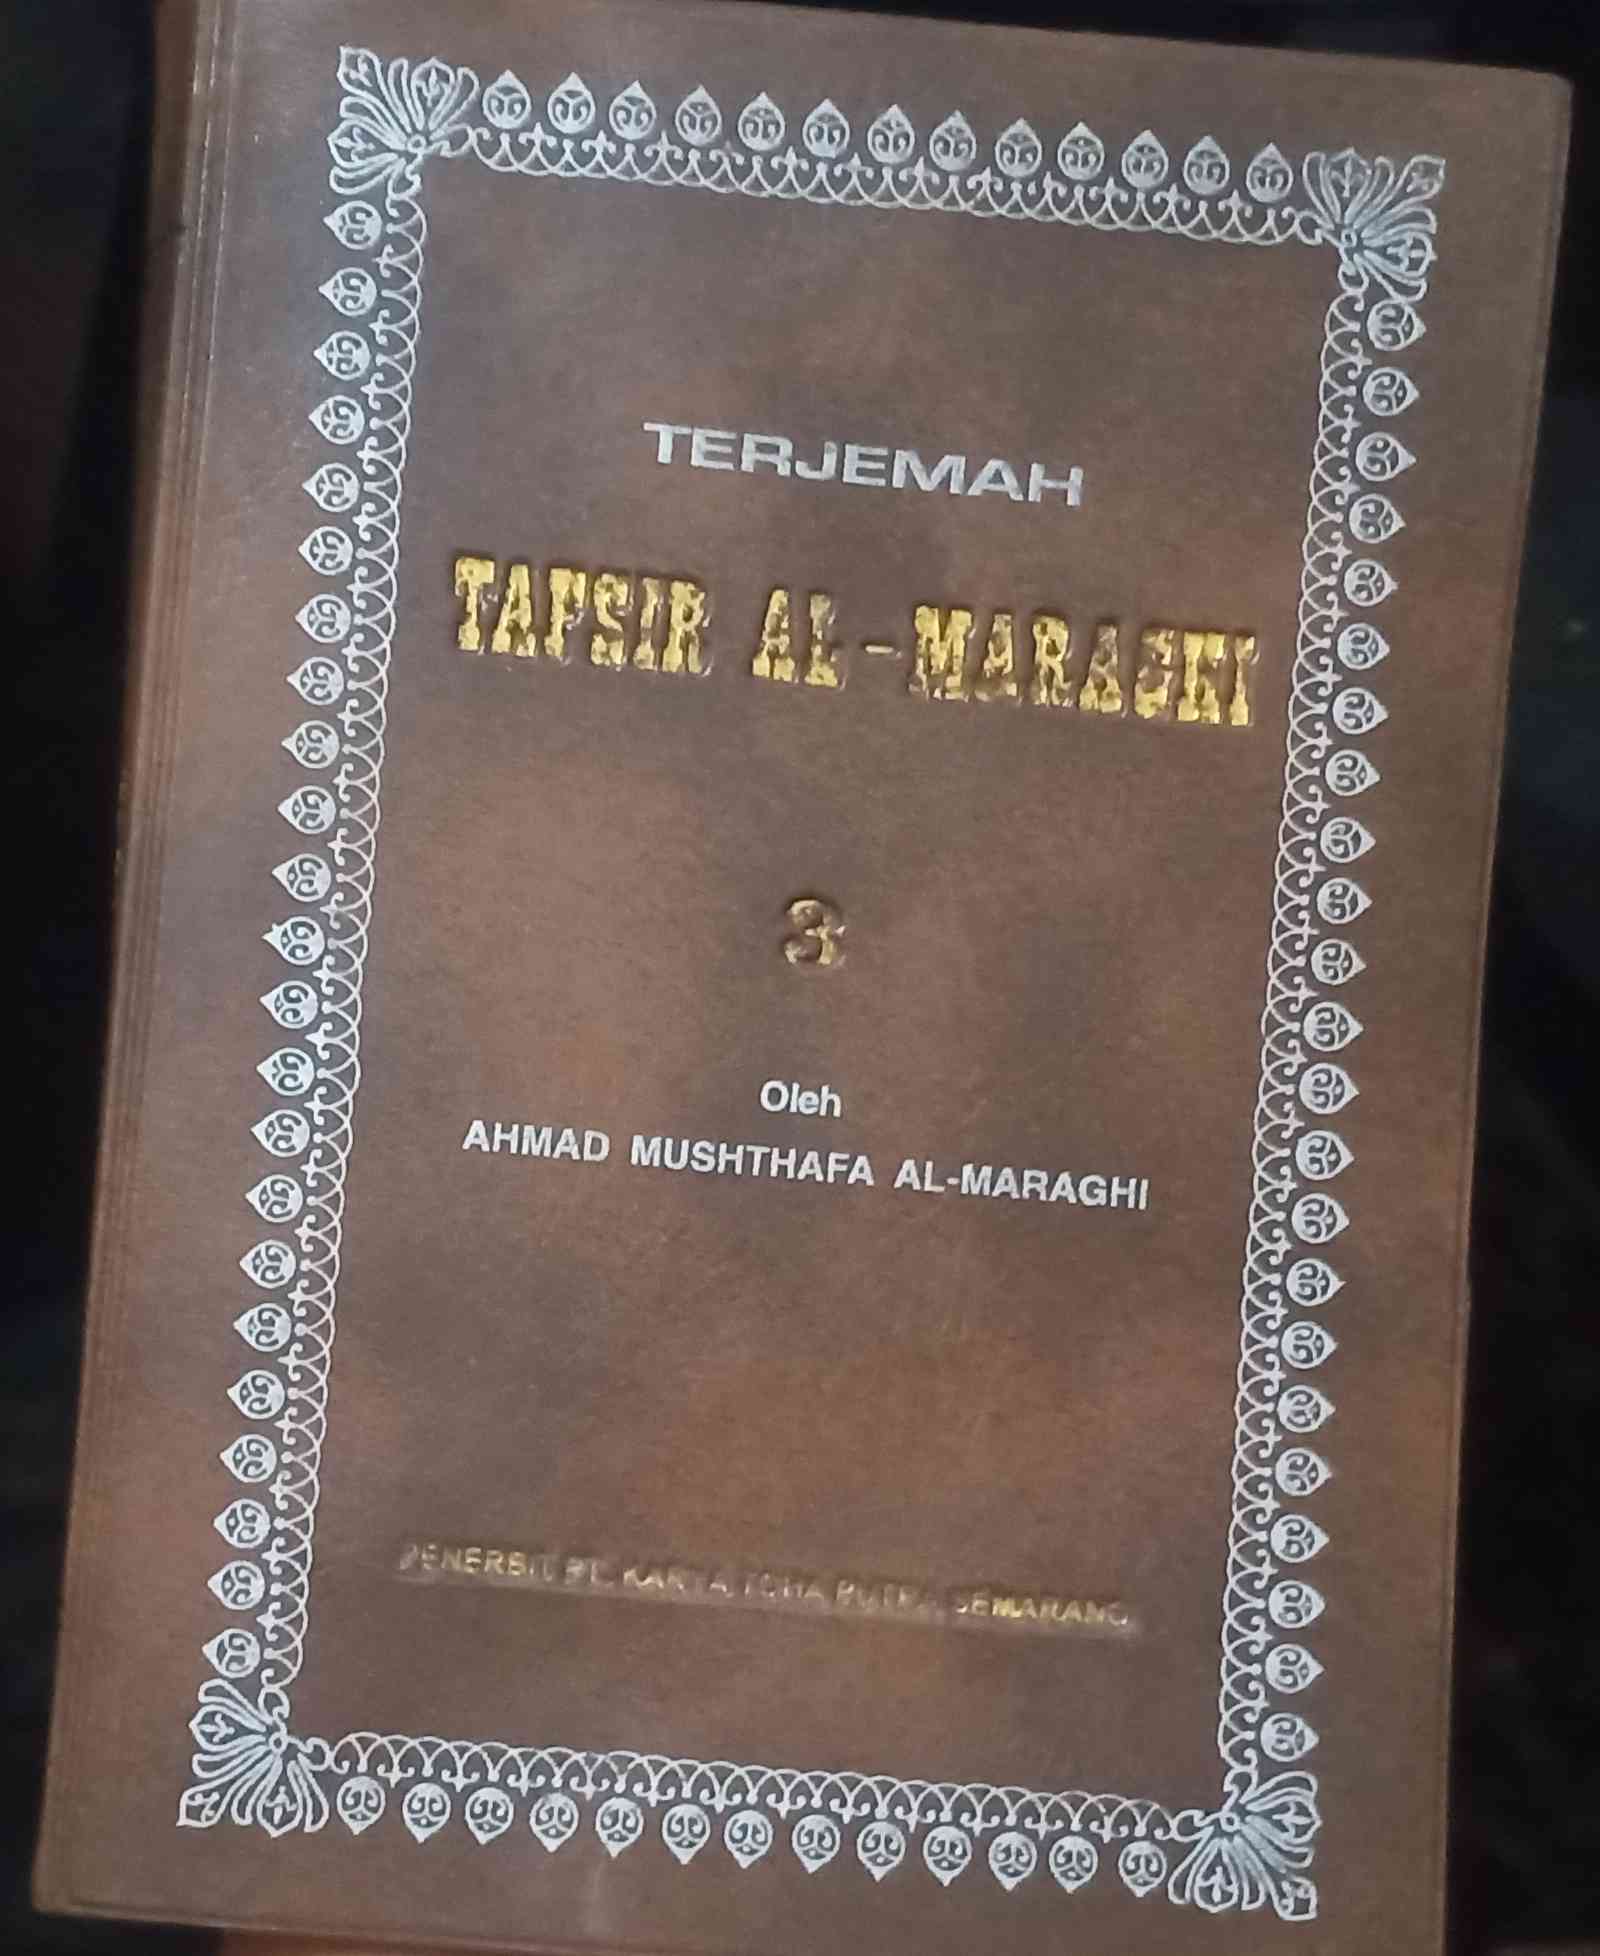 Mengenal Lebih Dalam Al-Quran dengan Membaca Terjemah Tafsir Al-Maraghi di Bulan Ramadan